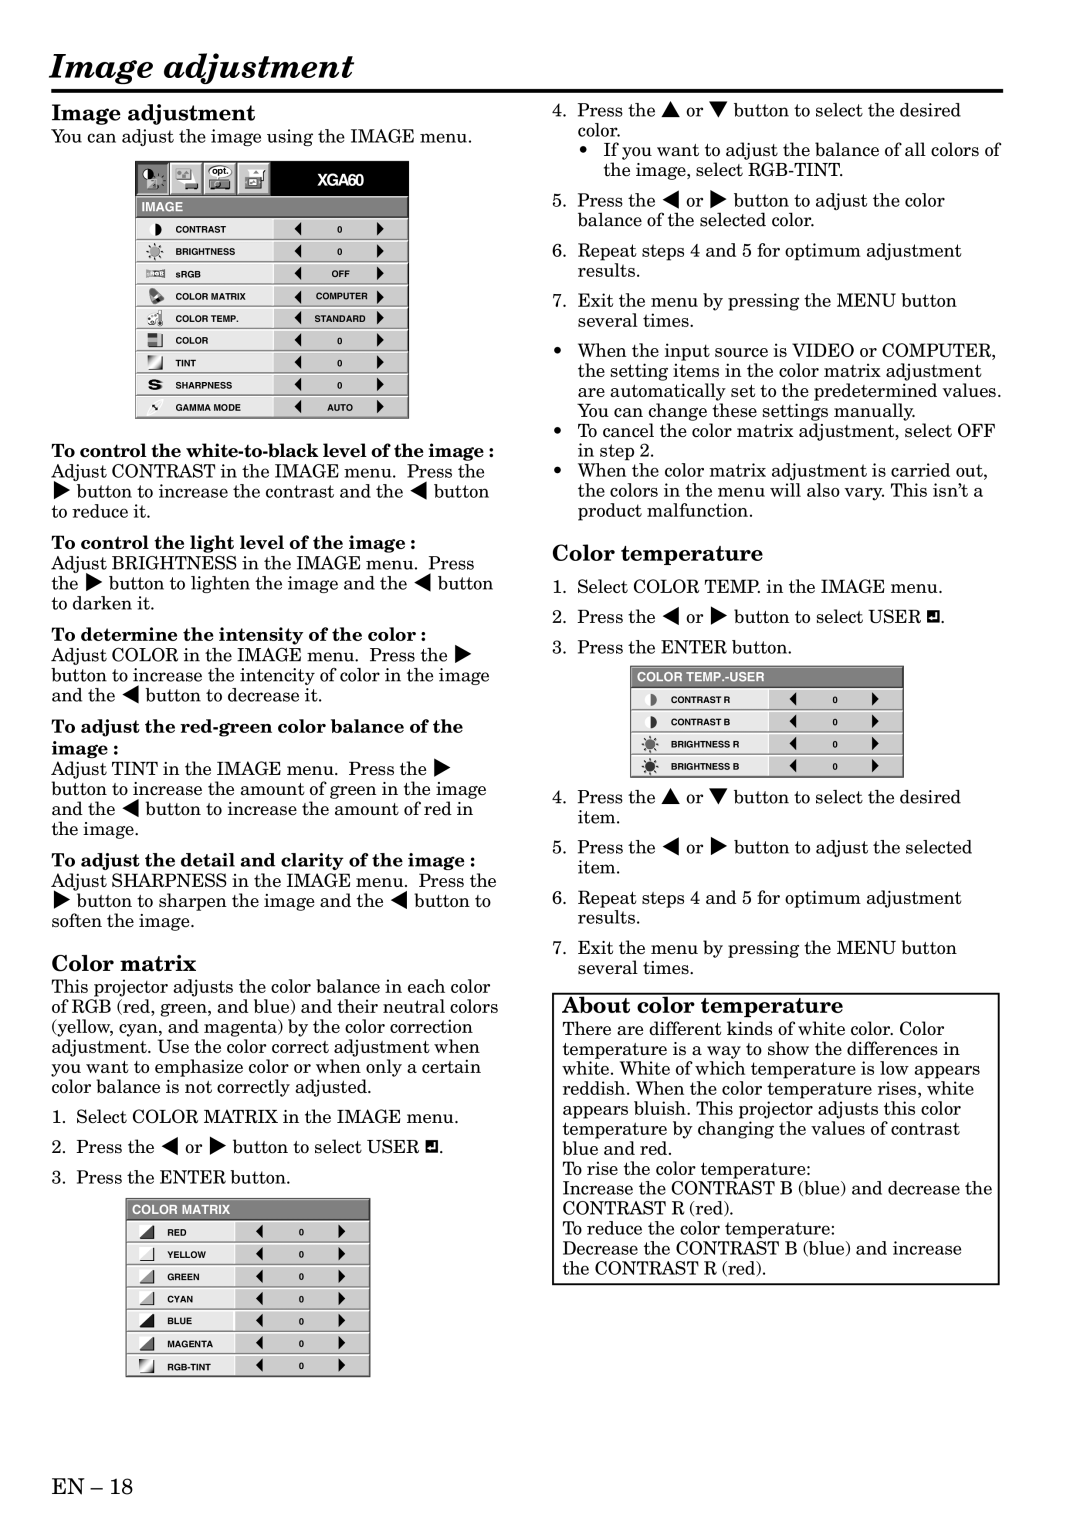 Mitsubishi Electronics XL6U user manual Image adjustment, Color matrix, Color temperature, About color temperature 